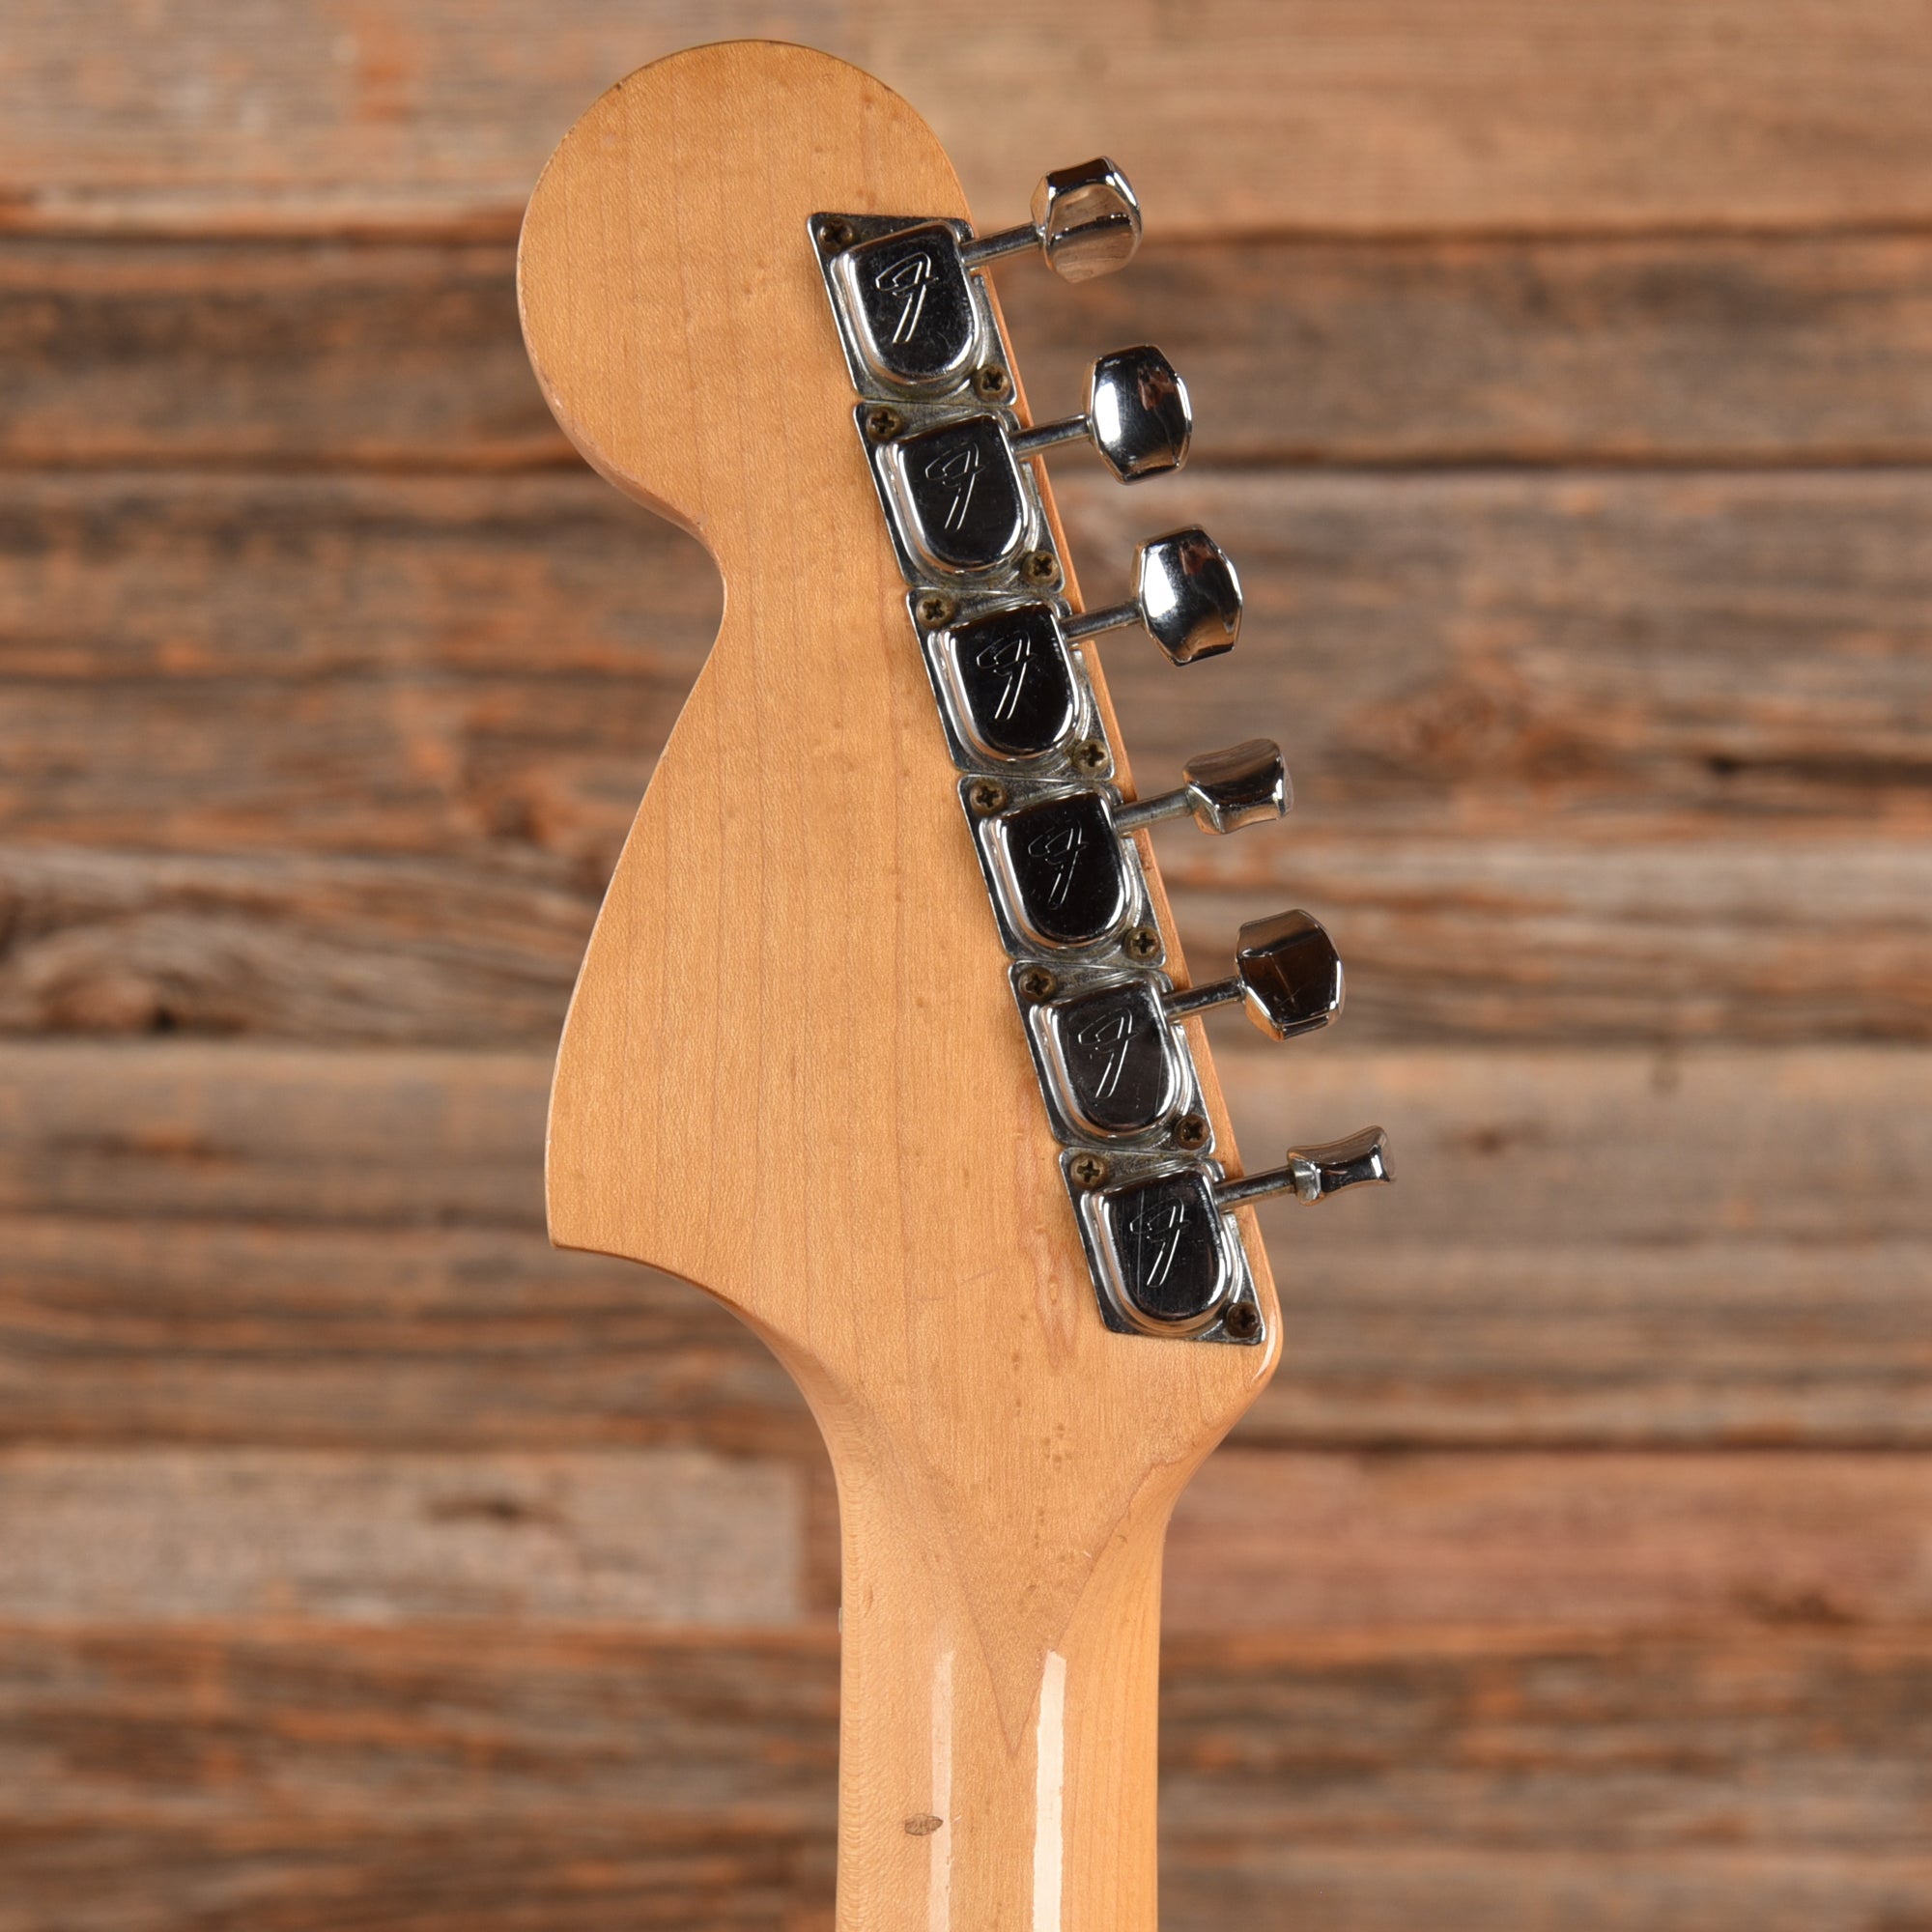 Fender Stratocaster Sunburst 1970